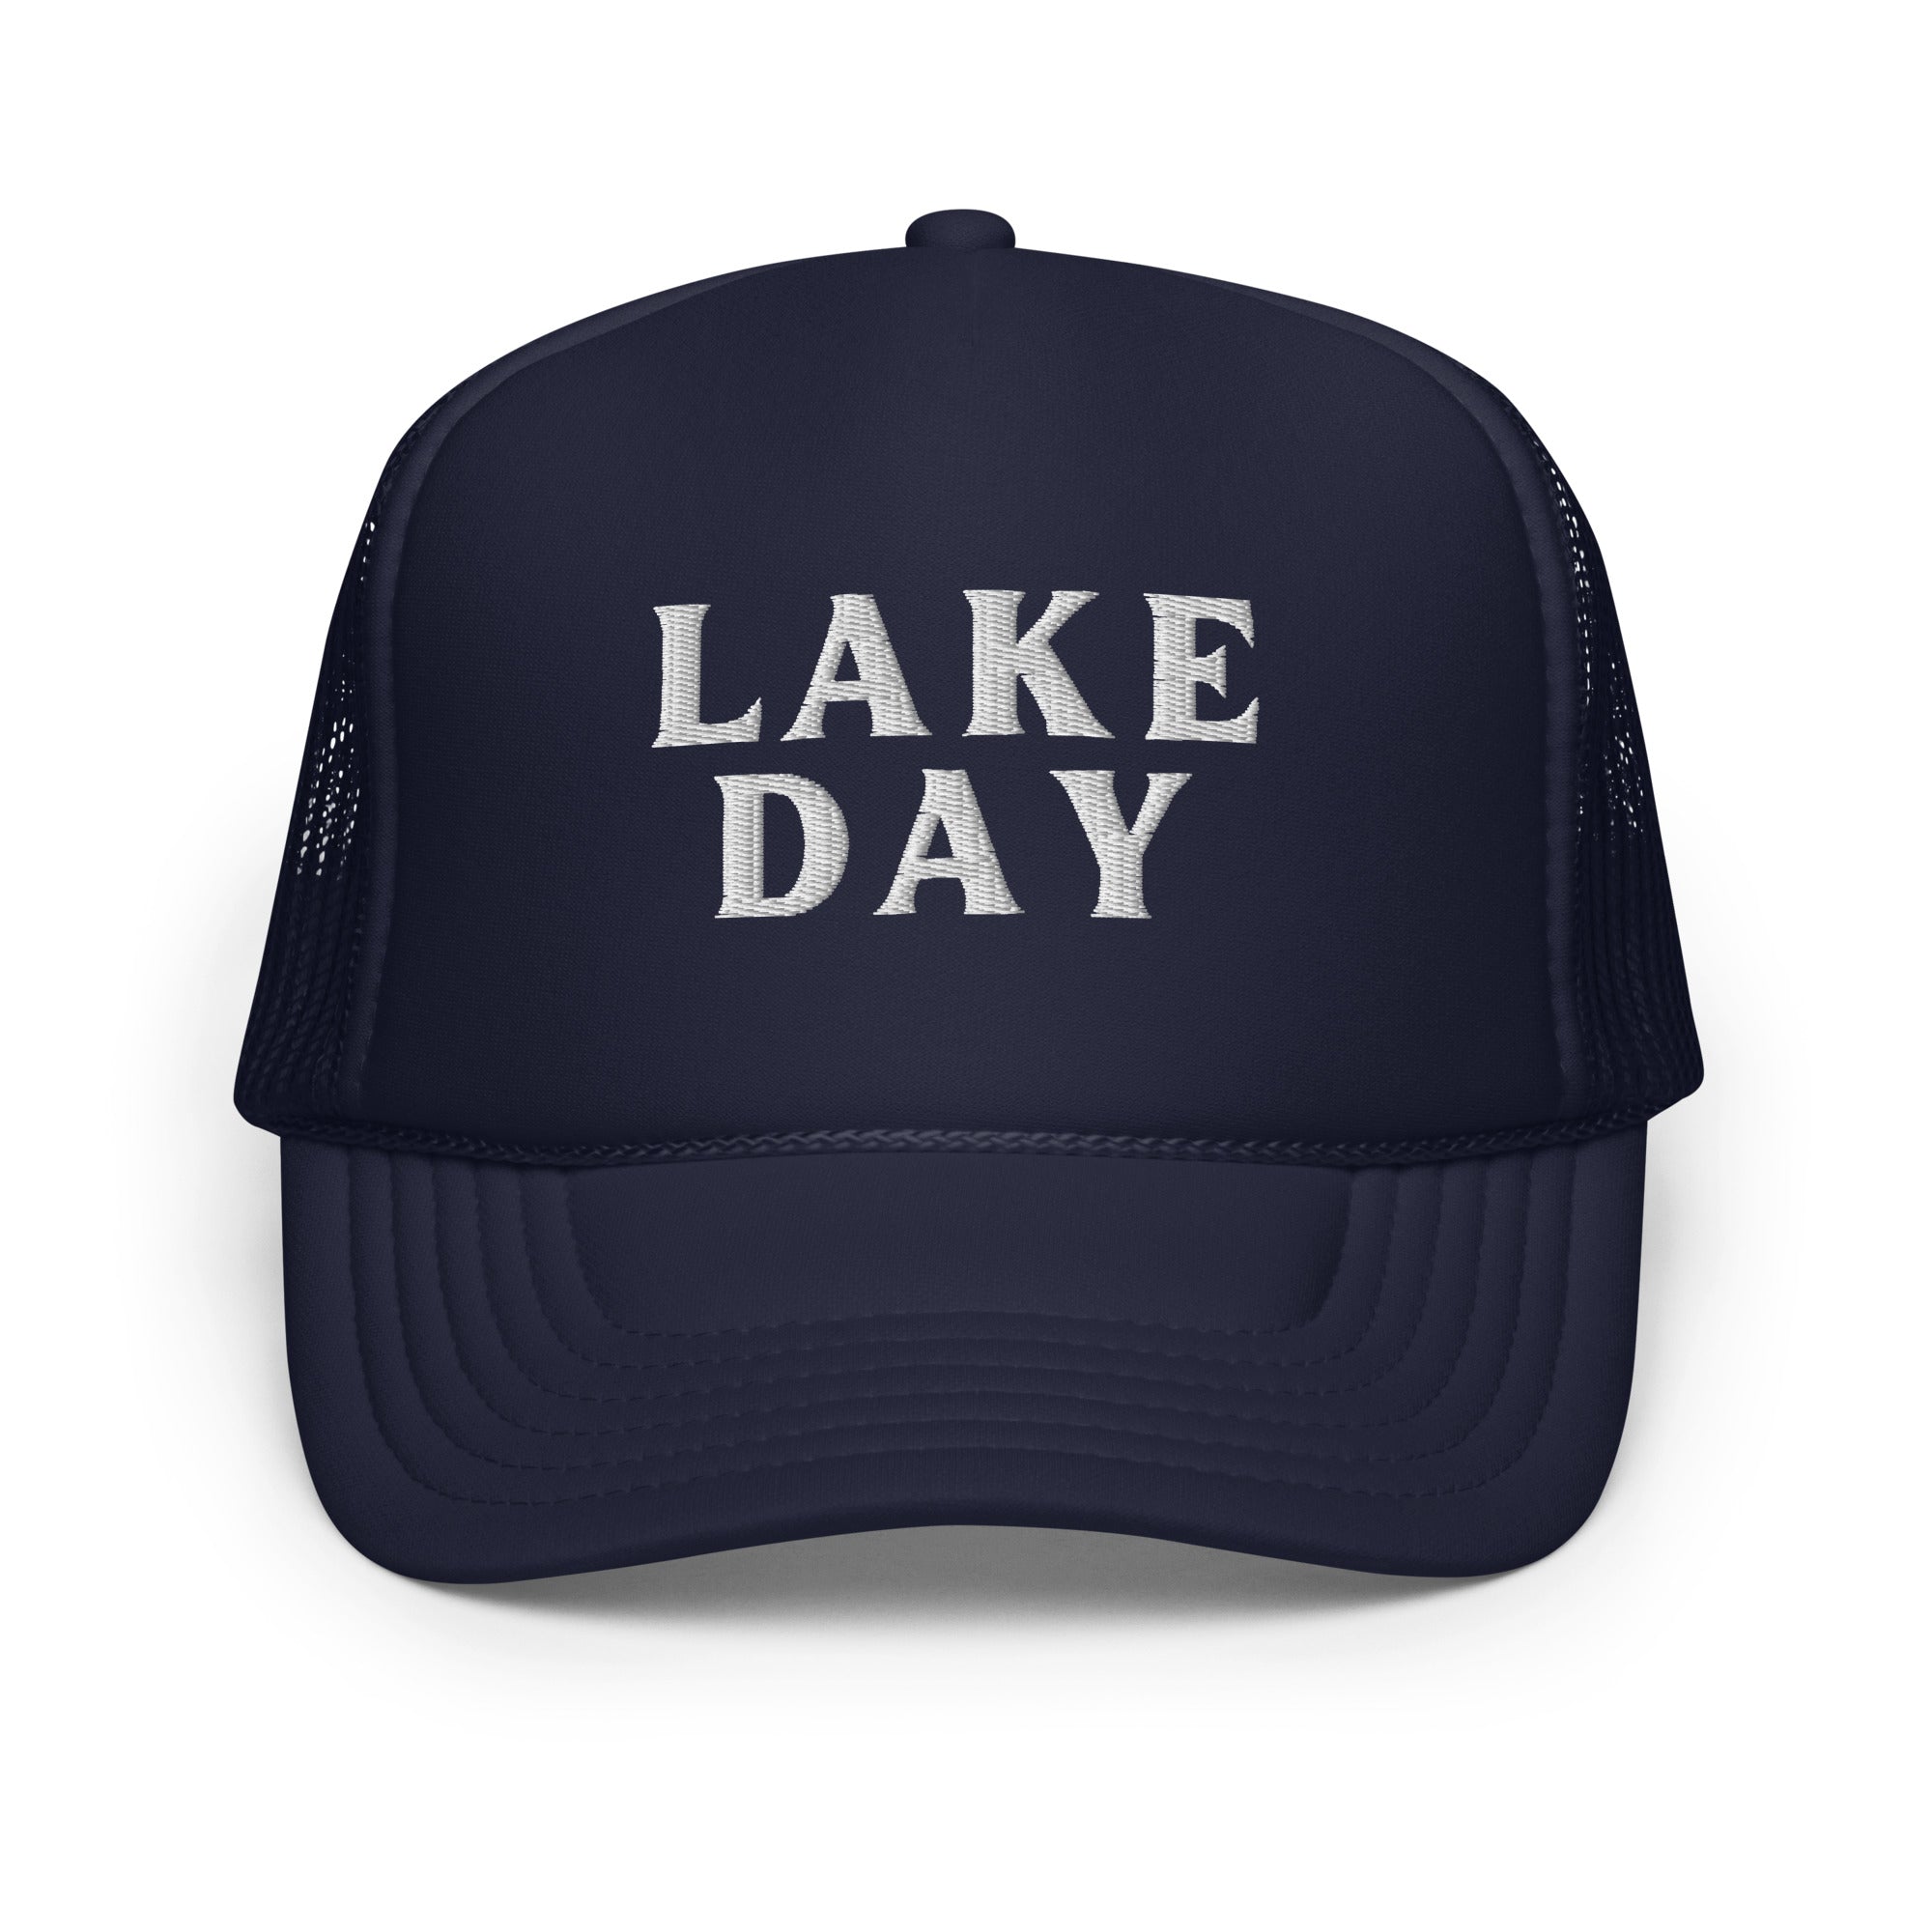 LAKE DAY Foam Trucker Hat